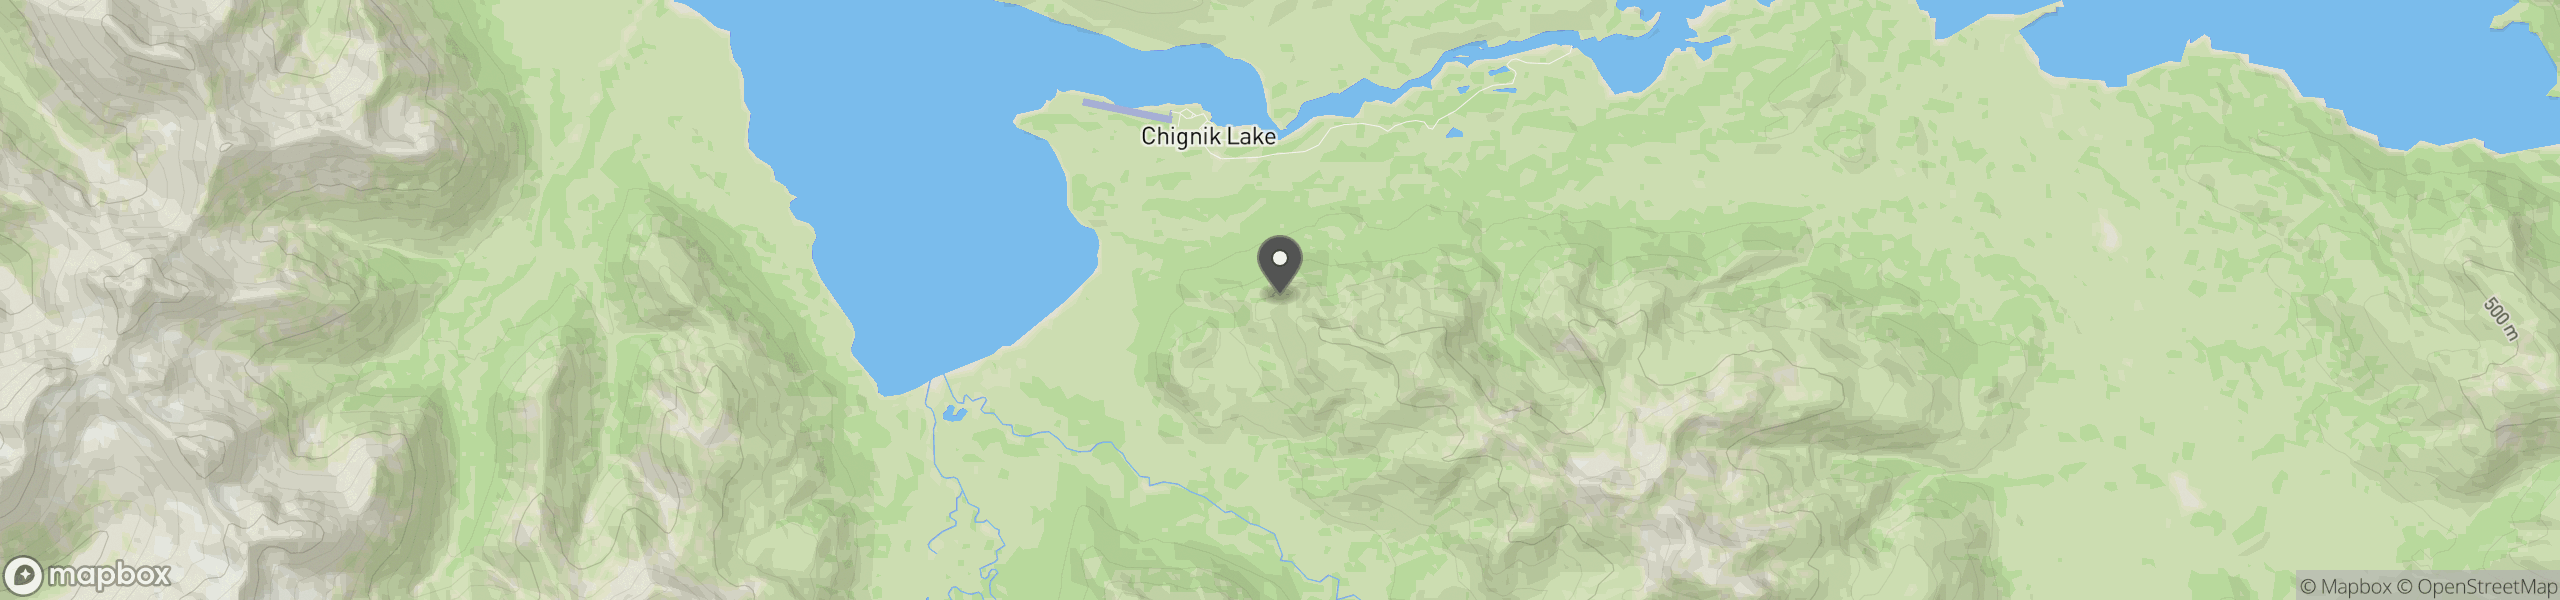 Chignik Lake, AK